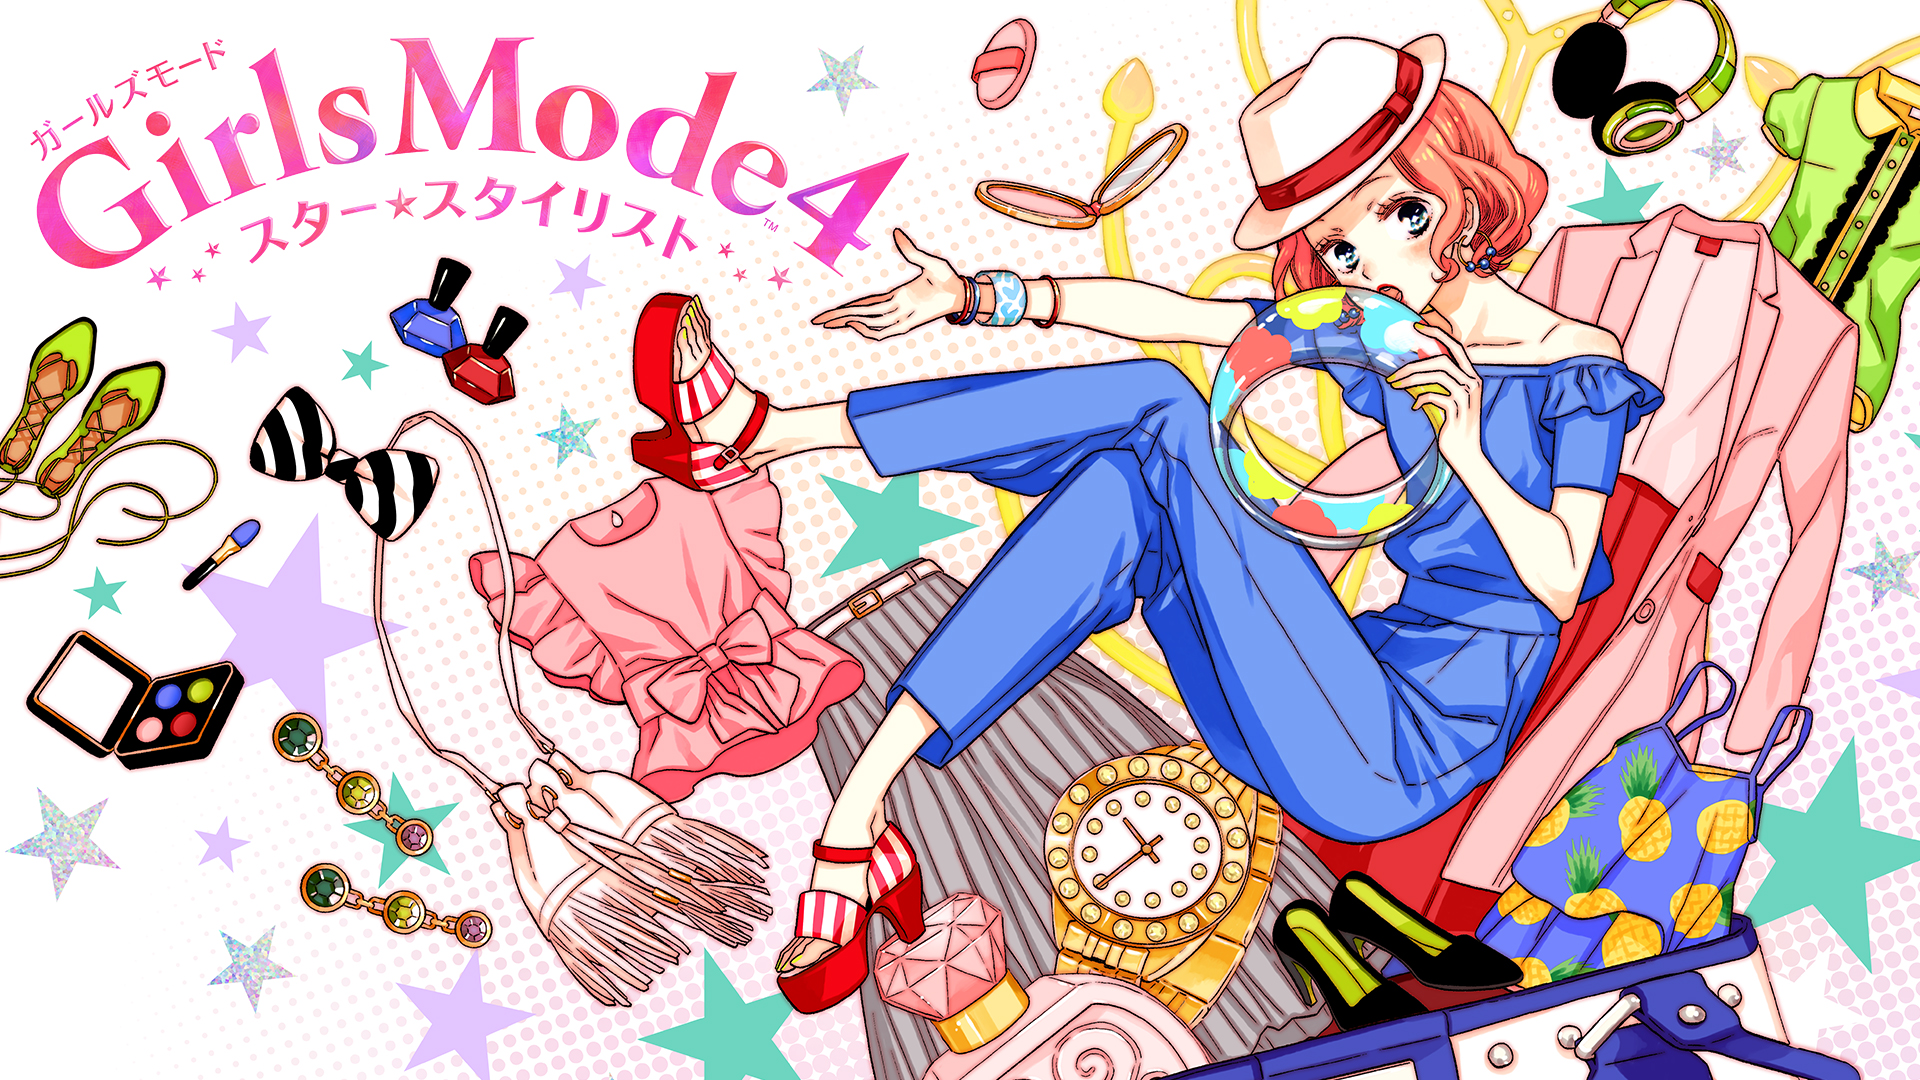 Girls Mode 4 スター☆スタイリスト | ニンテンドー3DS | 任天堂